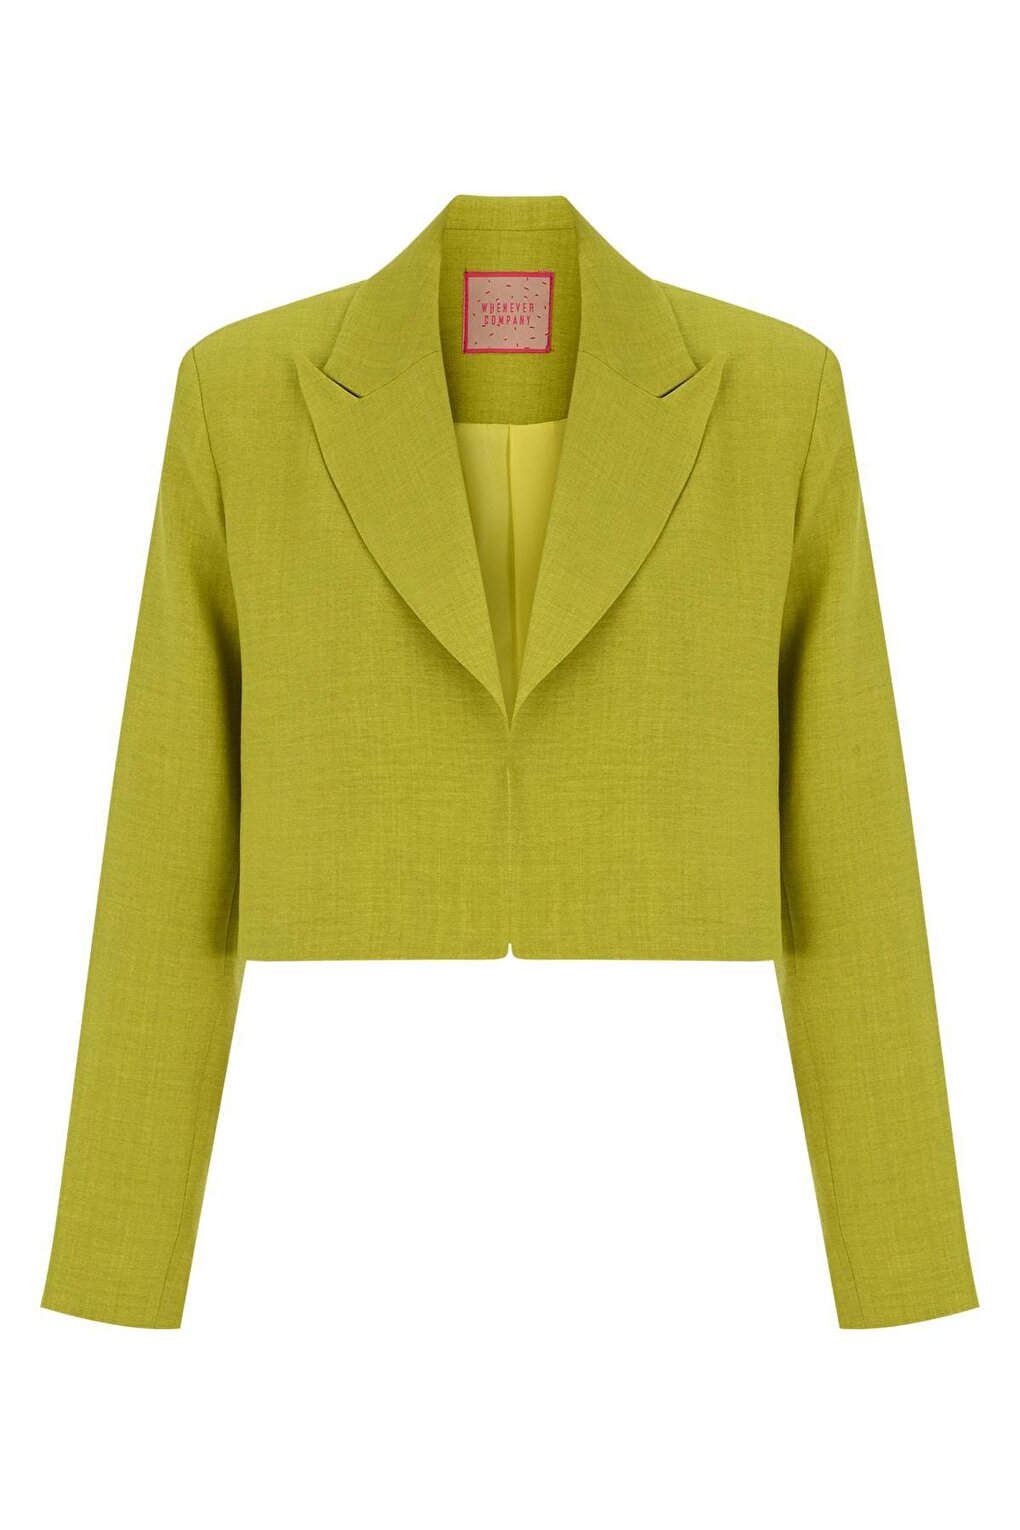 Укороченная льняная куртка маслянисто-зеленого цвета WHENEVER COMPANY